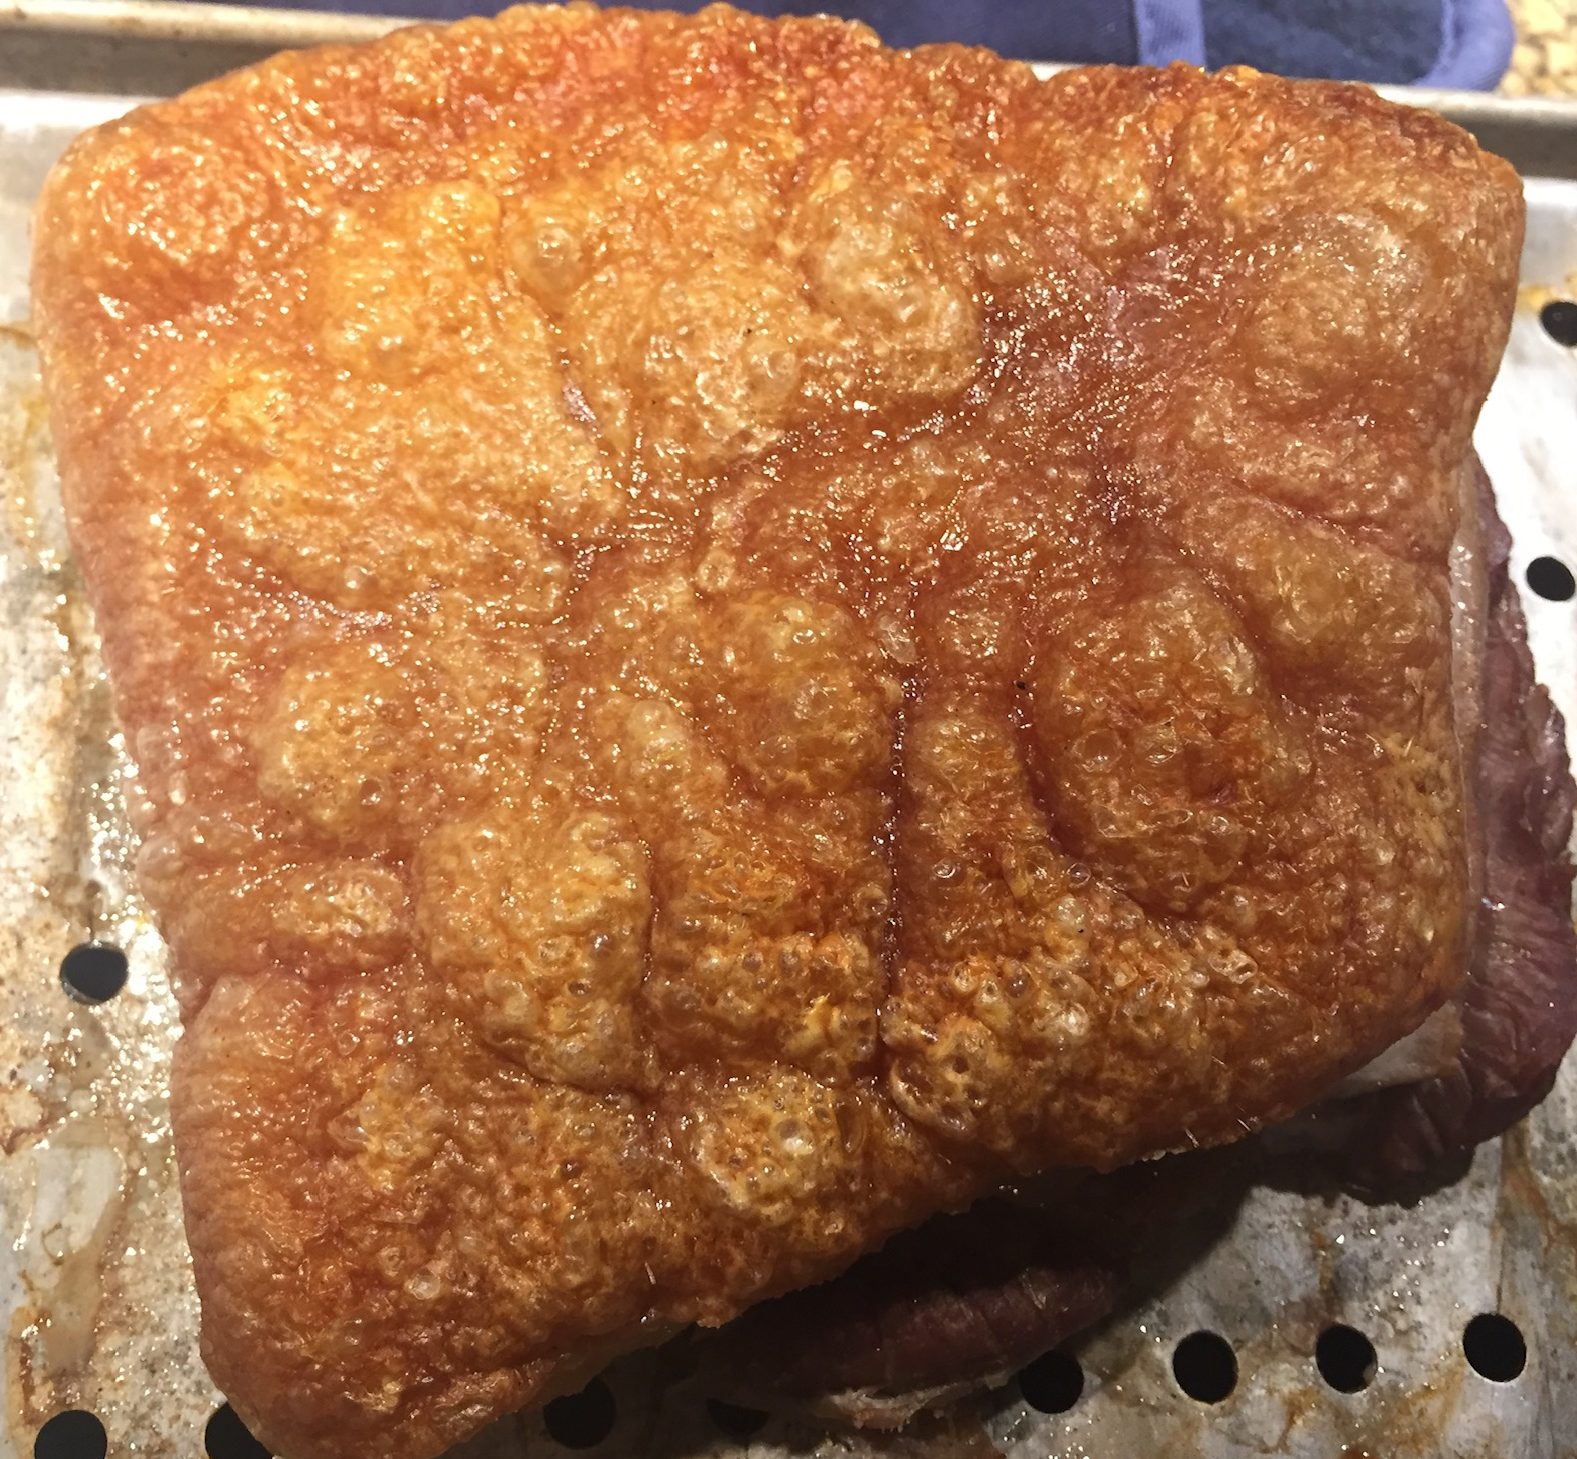 Roasted pork belly